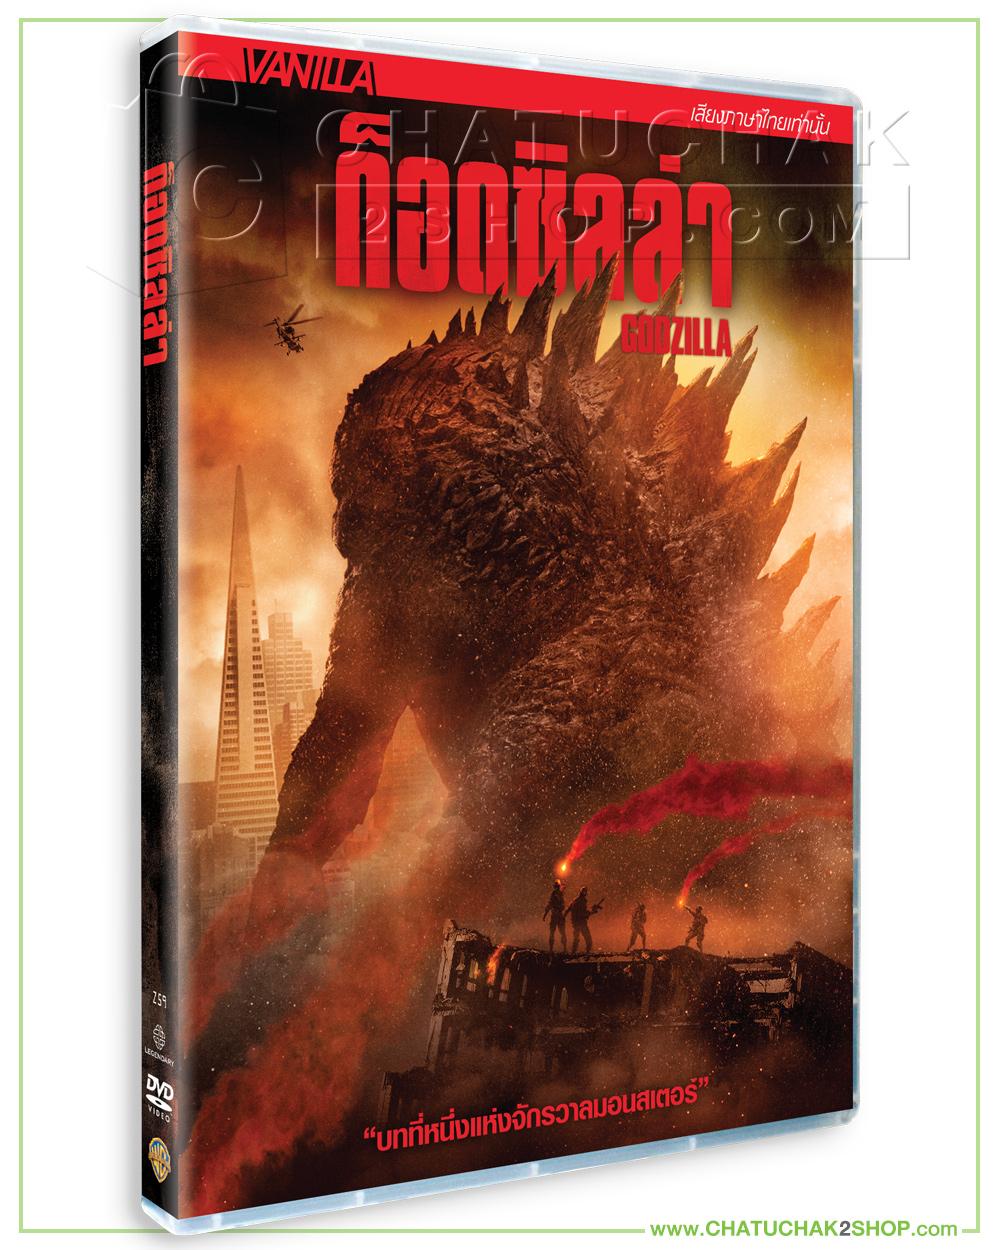 ก็อดซิลล่า (ดีวีดี เสียงไทยเท่านั้น) / Godzilla (2014) DVD Vanilla